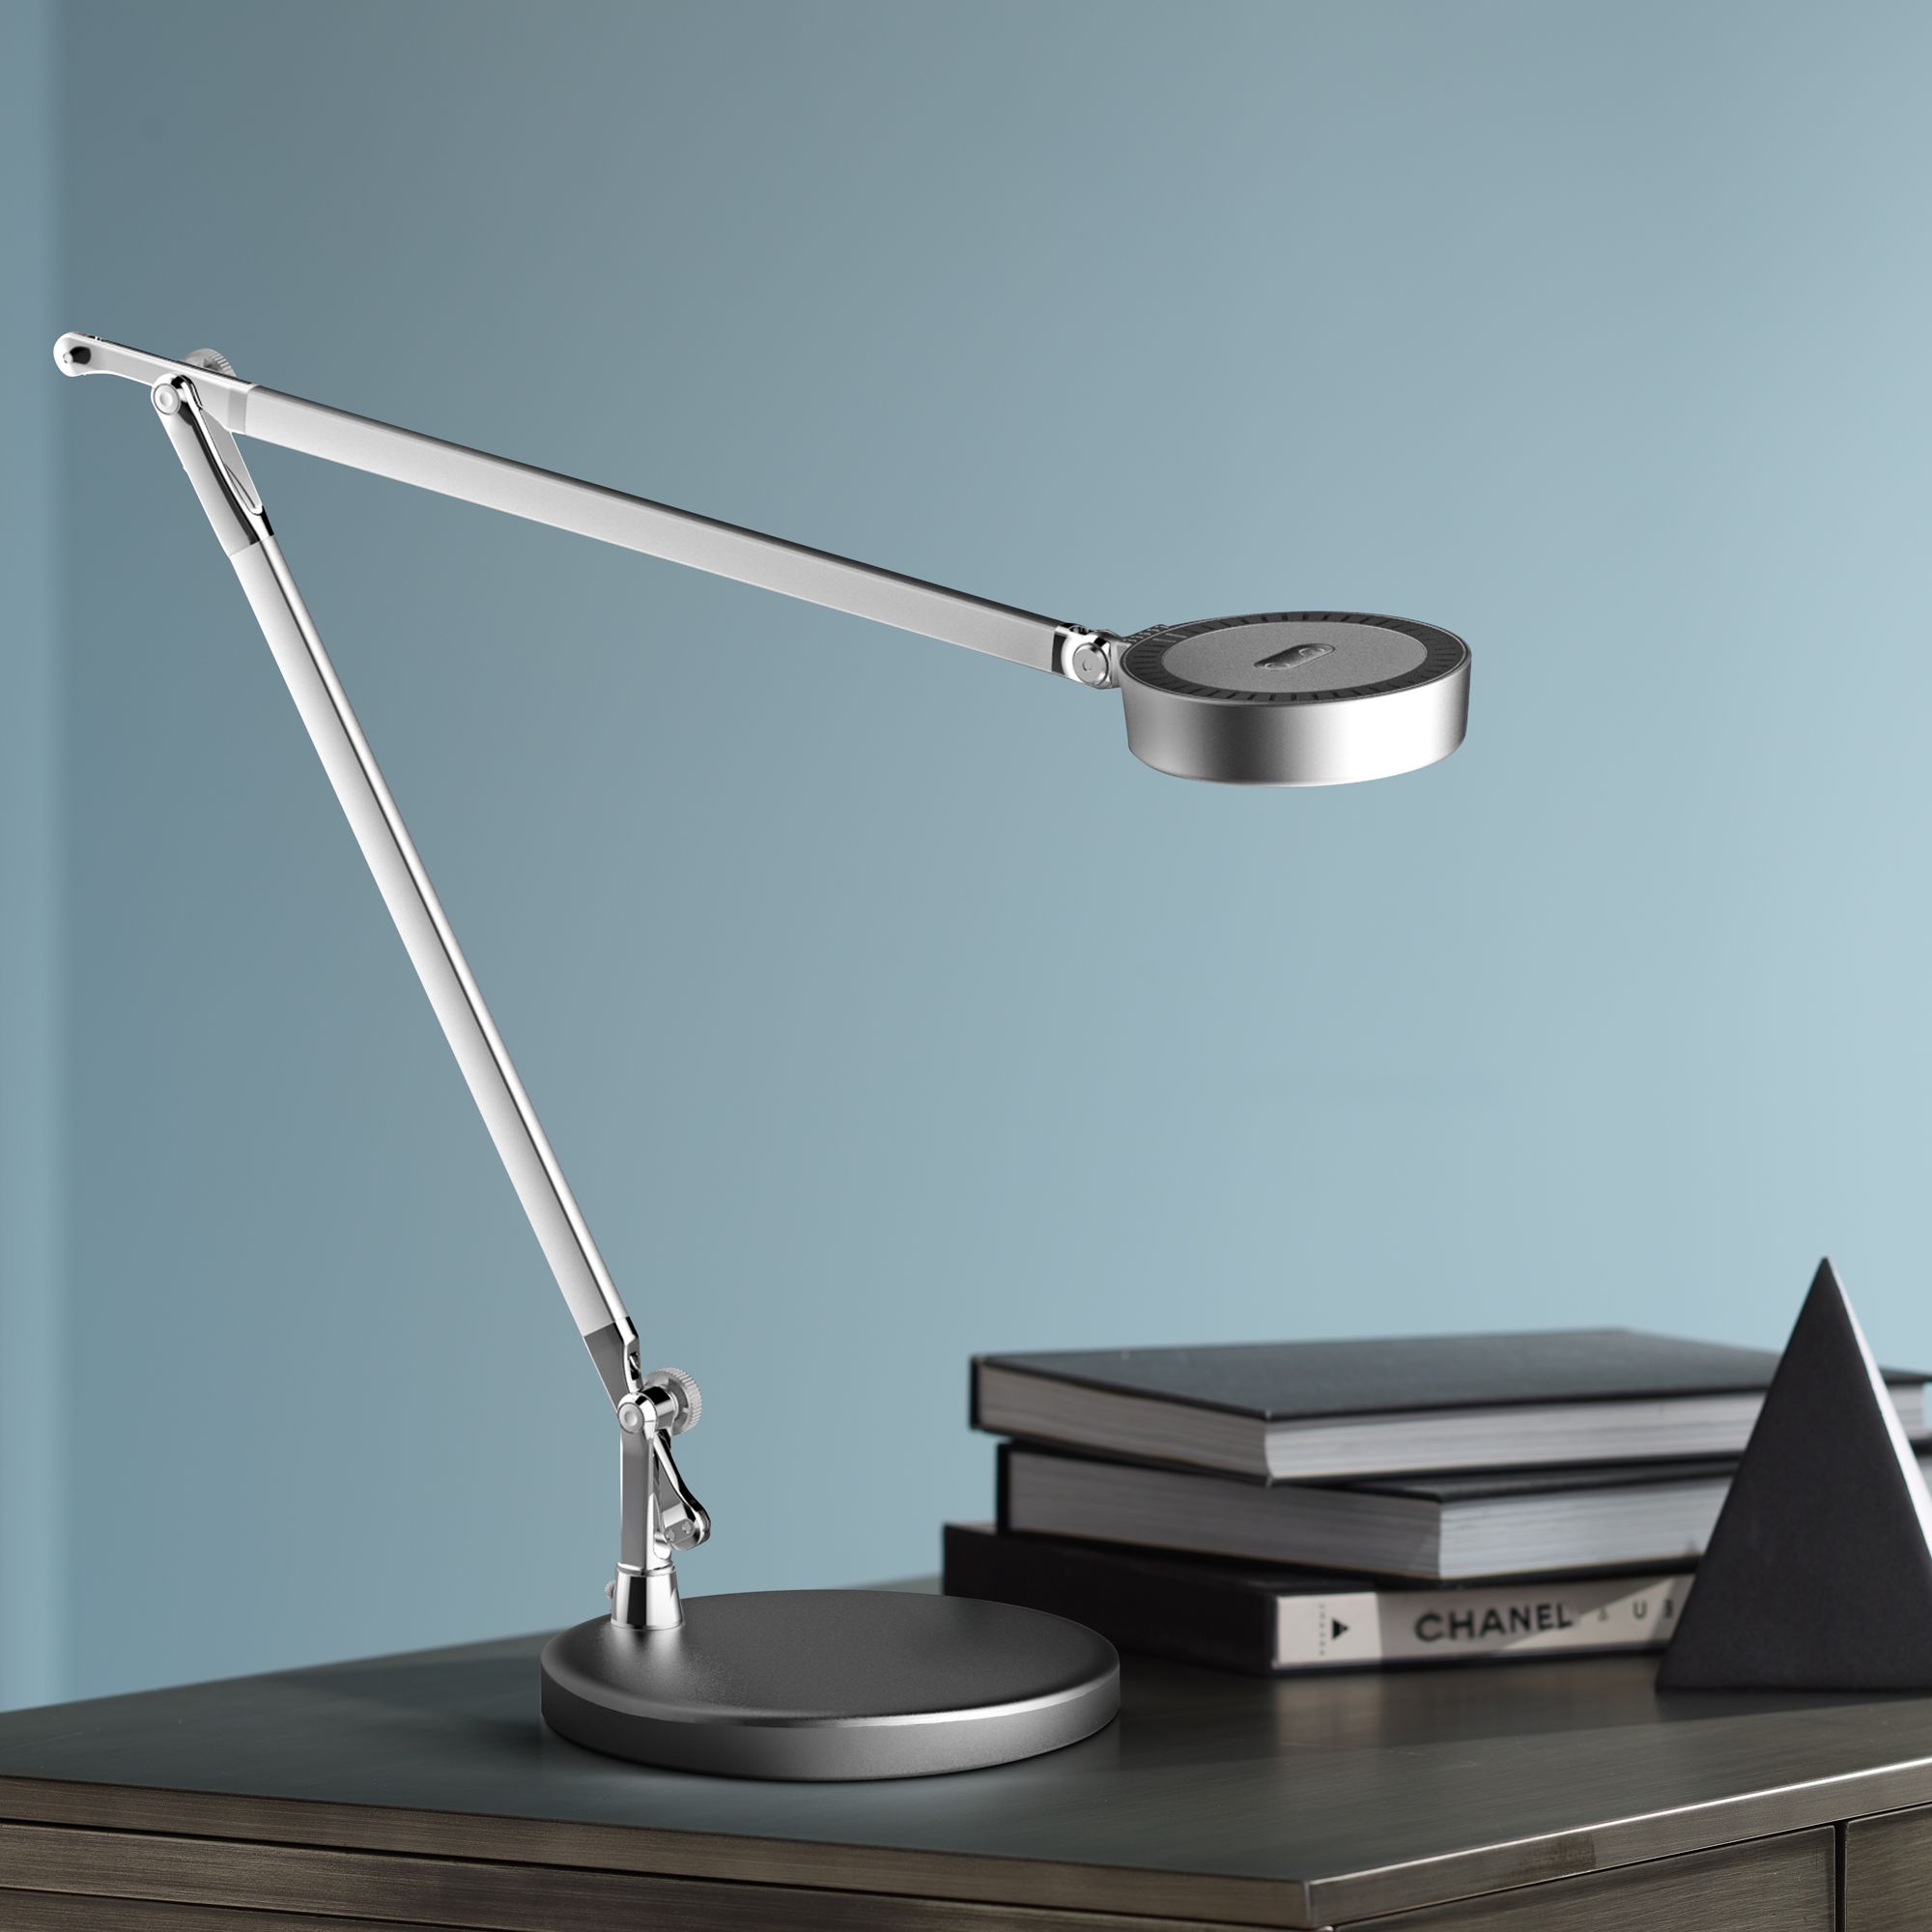 led lamp modern